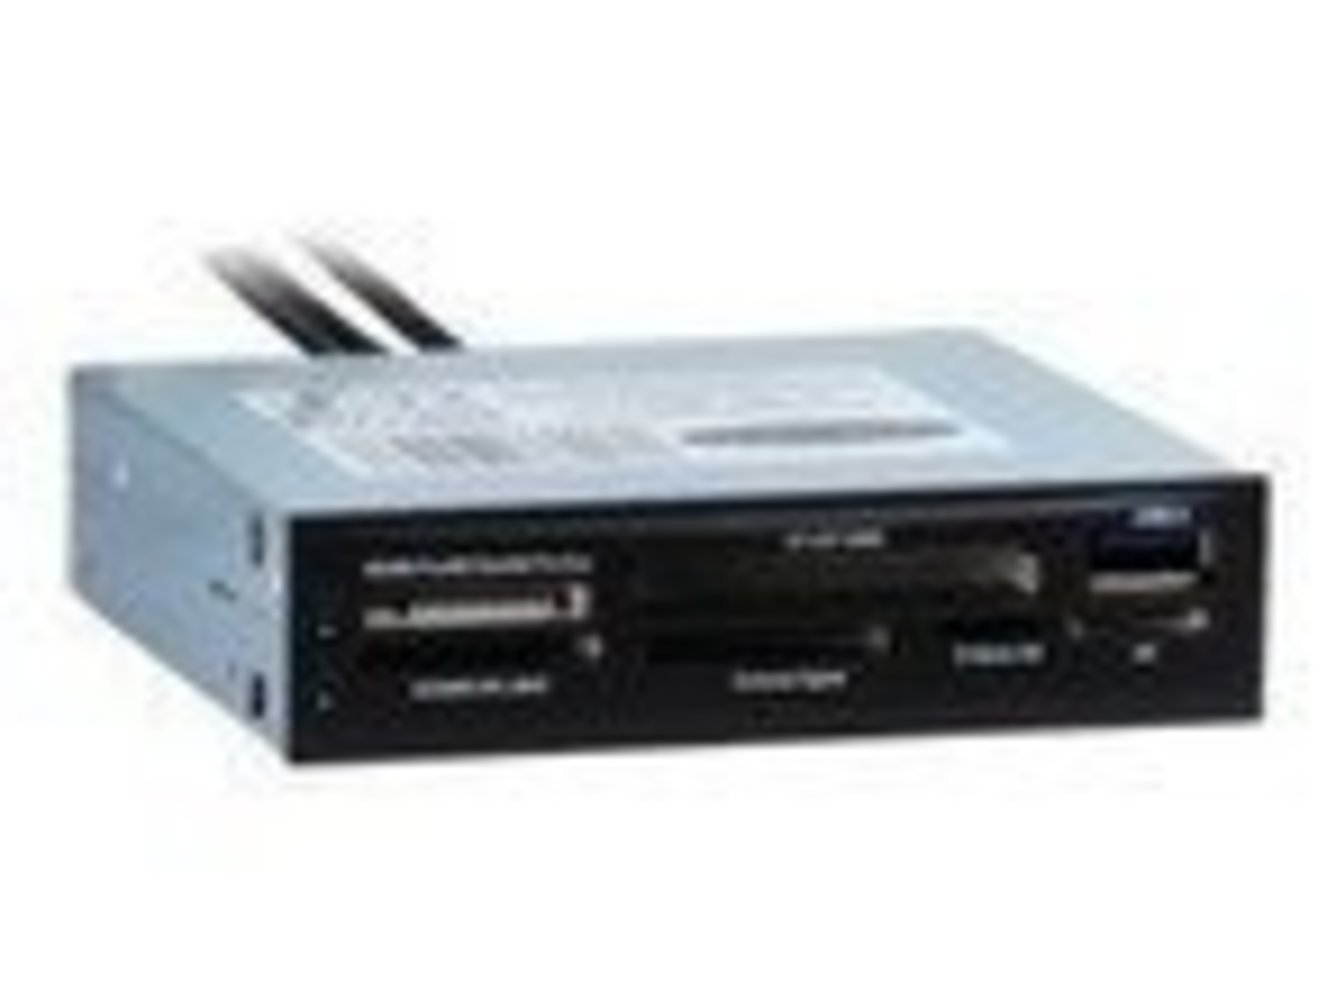  NITROX CI-01 Cardreader fuer diverse Kartenformate inkl ext USB 3.0-Anschluss